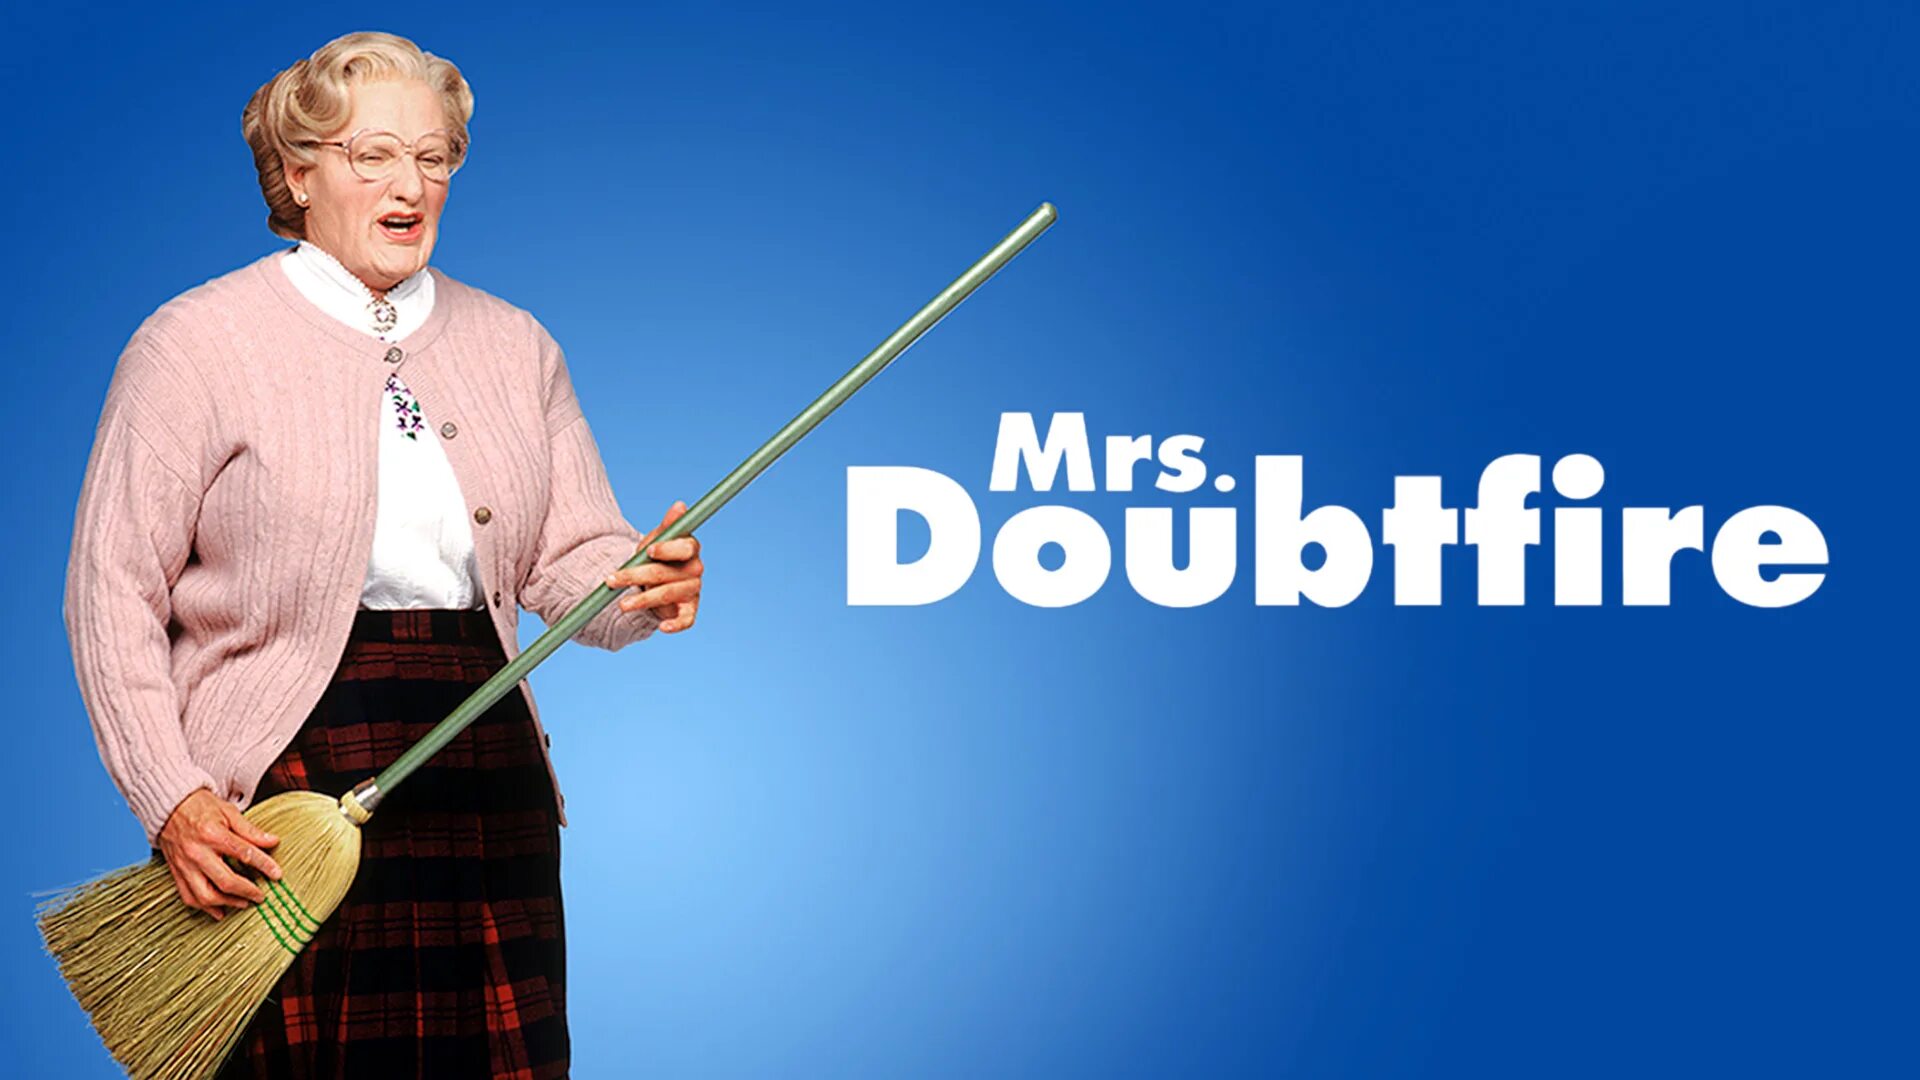 Knock here. Миссис Даутфайр - Mrs. Doubtfire (1993). Робин Уильямс миссис Даутфайр.